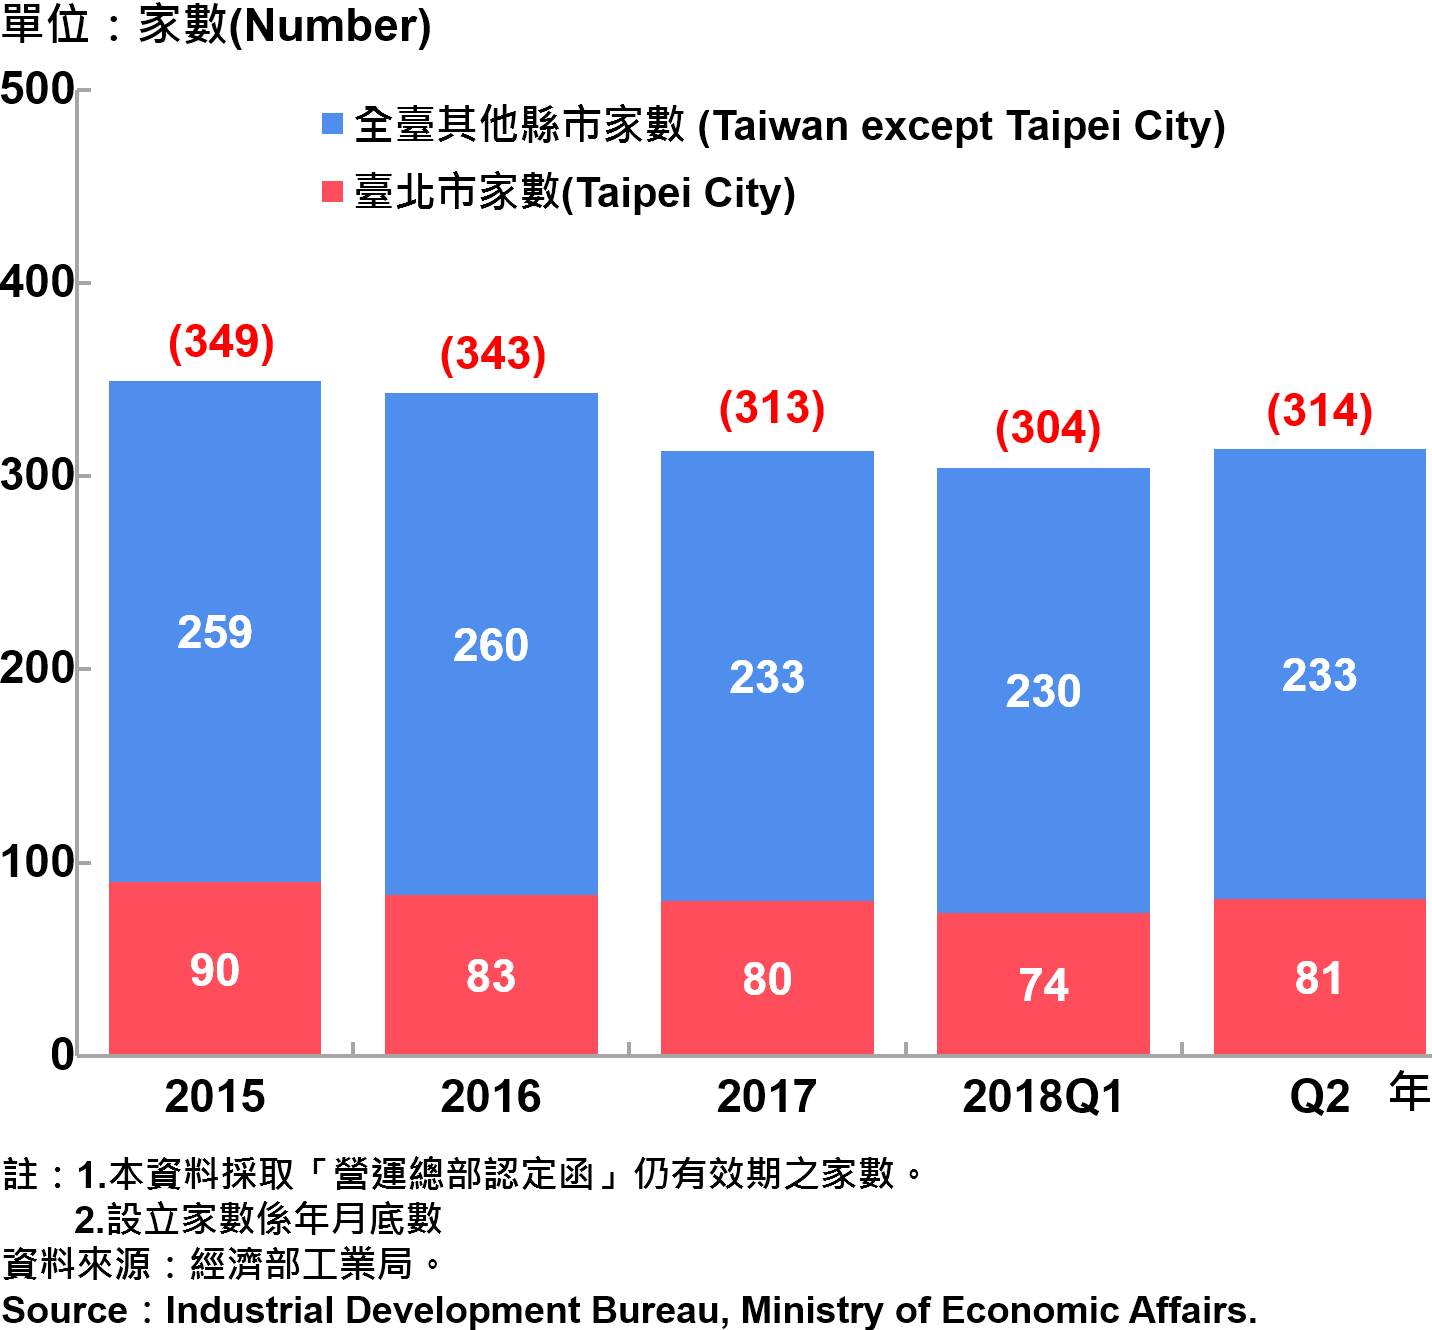 臺北市企業營運總部之設立家數—2018Q2 Number of Established Enterprise Business Headquarters in Taipei City—2018Q2